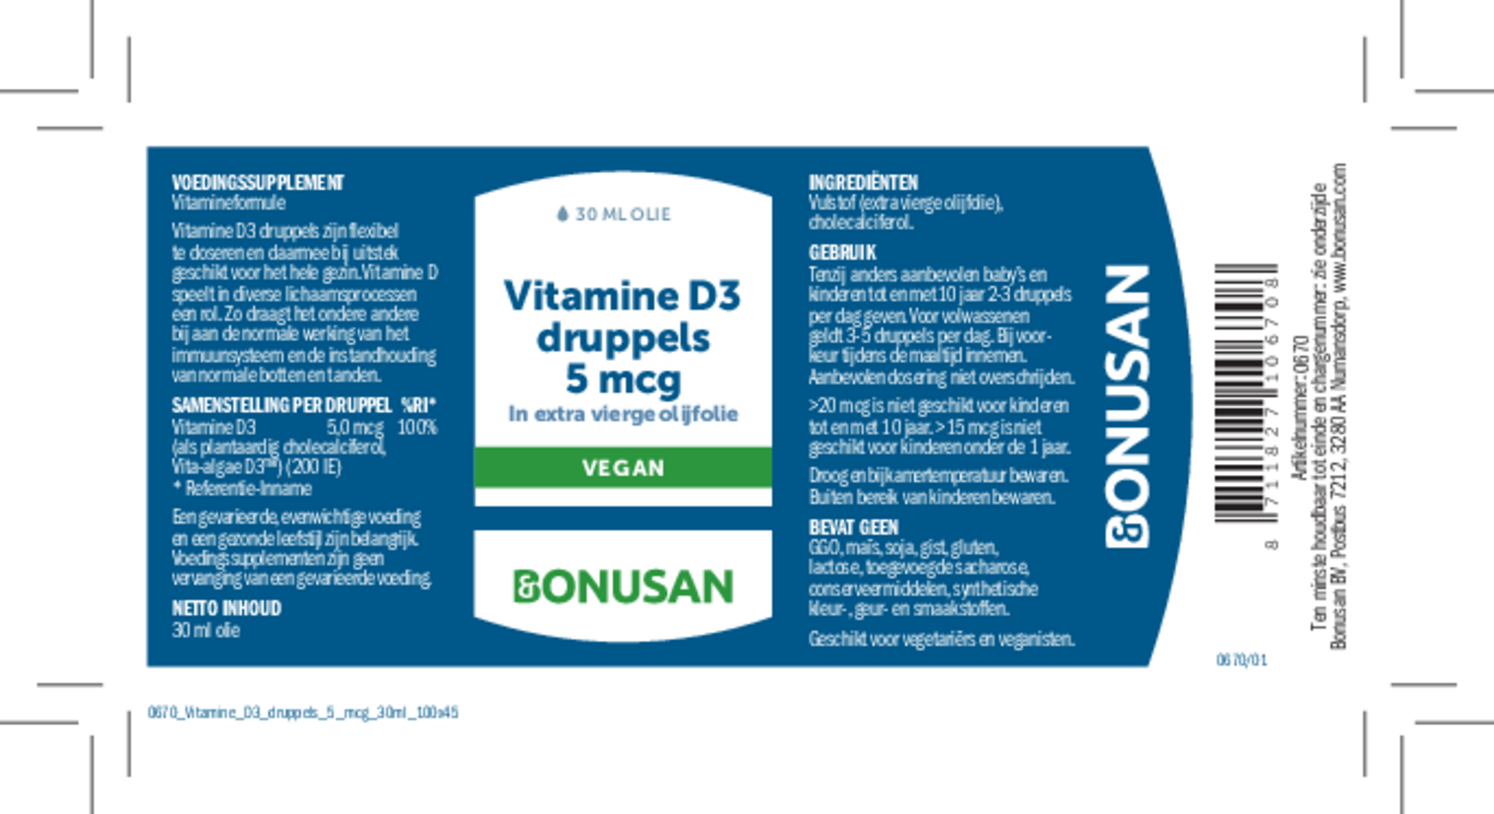 Vitamine D3 5 mcg Druppels Duoverpakking afbeelding van document #1, etiket